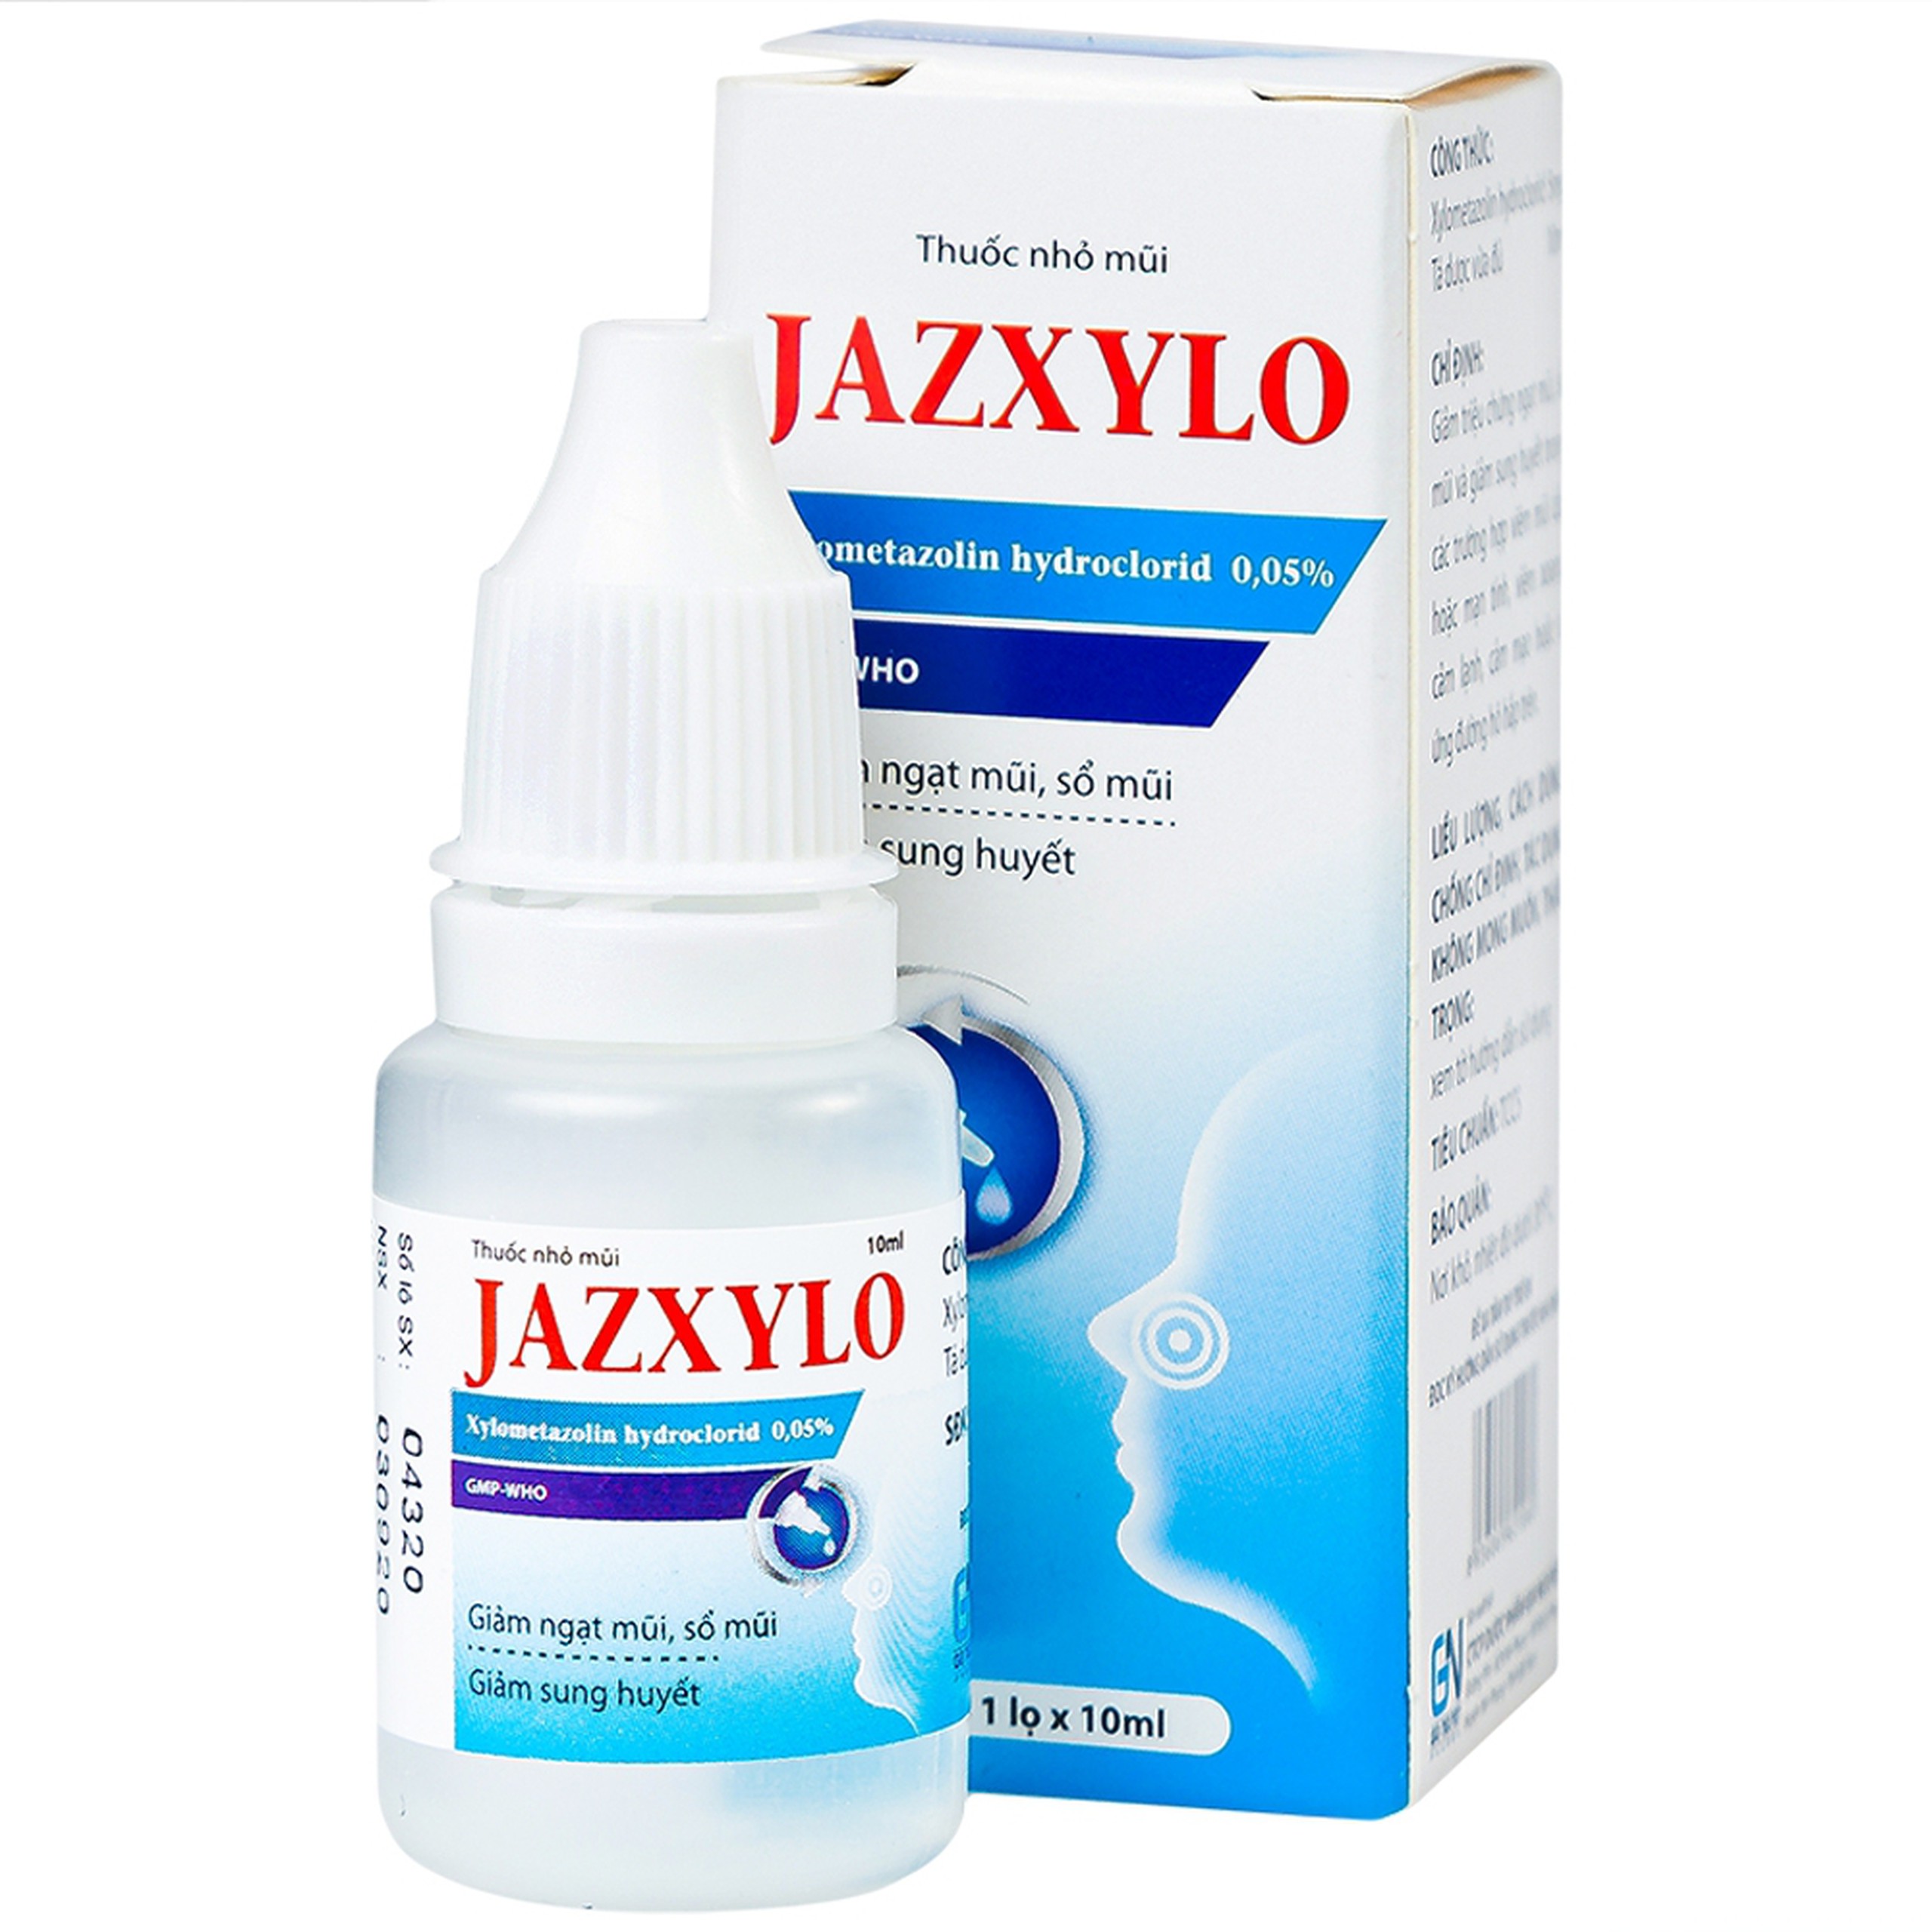 Thuốc nhỏ mũi Jazxylo Gia Nguyễn giảm ngạt mũi, sổ mũi, sung huyết (10ml)